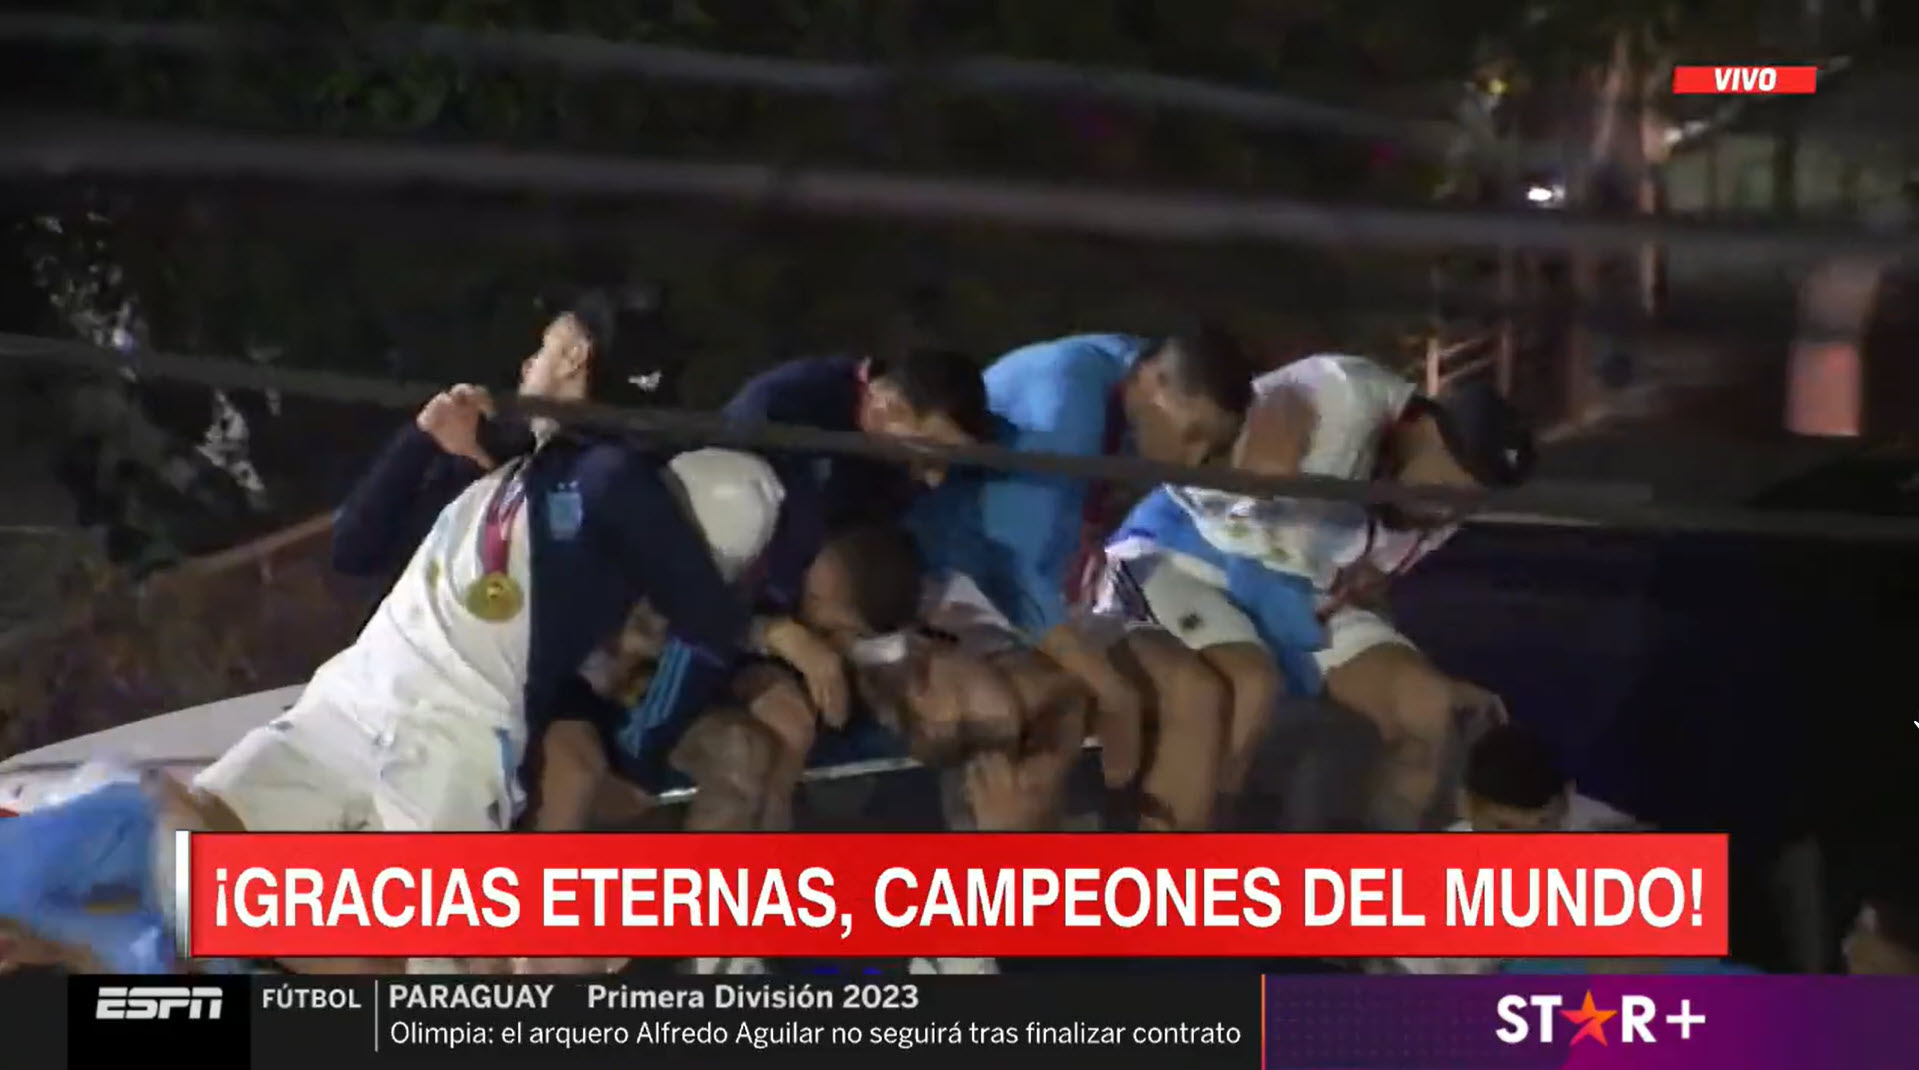 Μουντιάλ: Βίντεο σοκ από την Αργεντινή – Παραλίγο ατύχημα με το πούλμαν που μετέφερε τους πρωταθλητές κόσμου